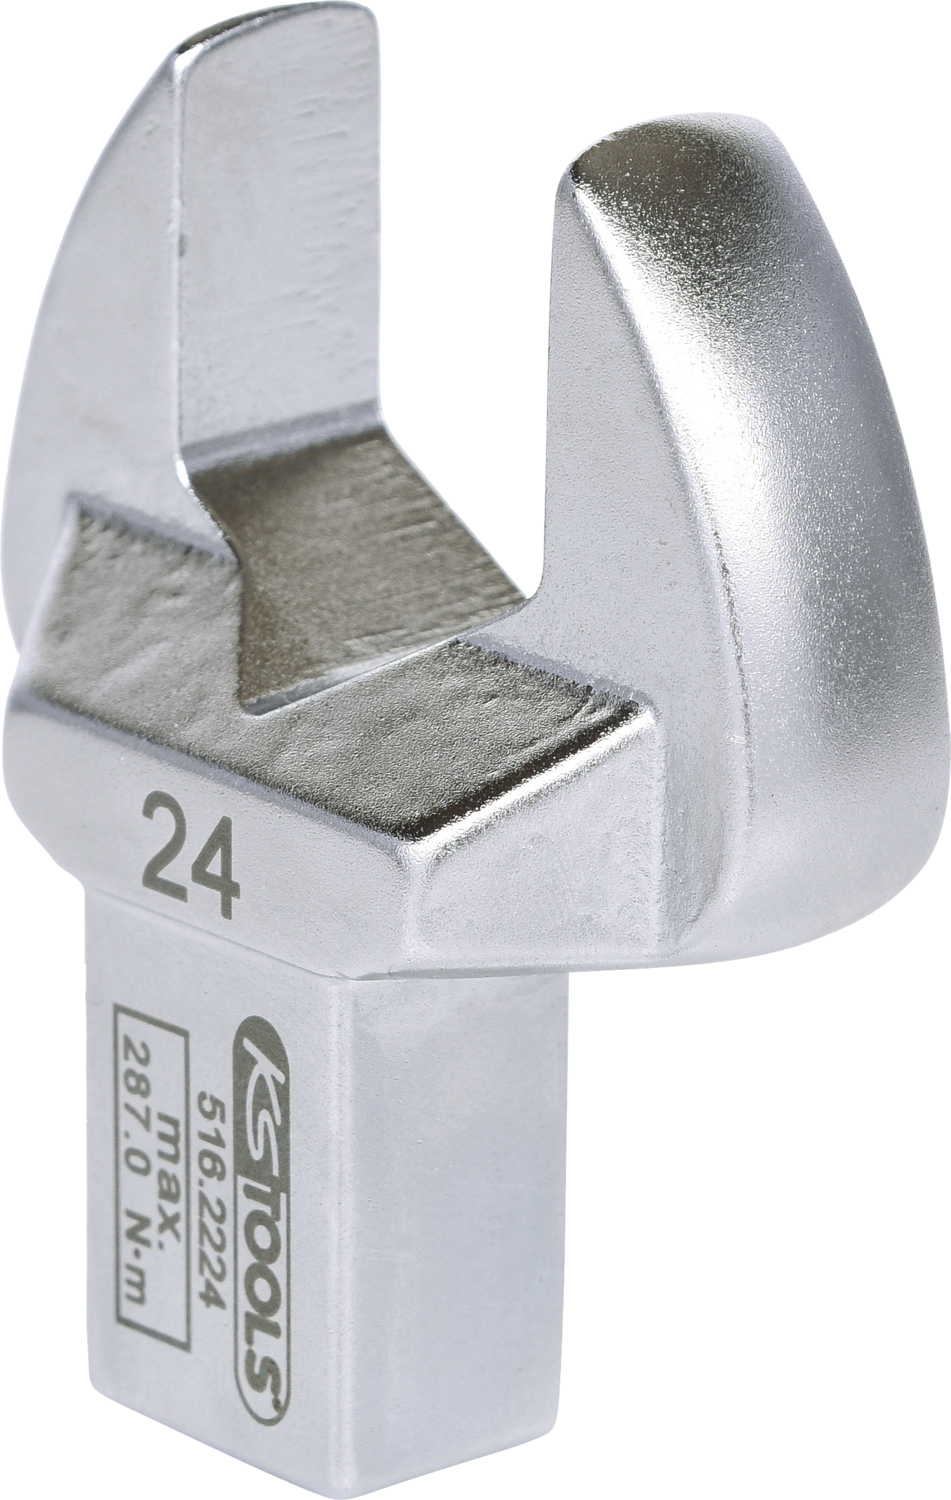 14x18mm Einsteck-Maulschlüssel, 24mm